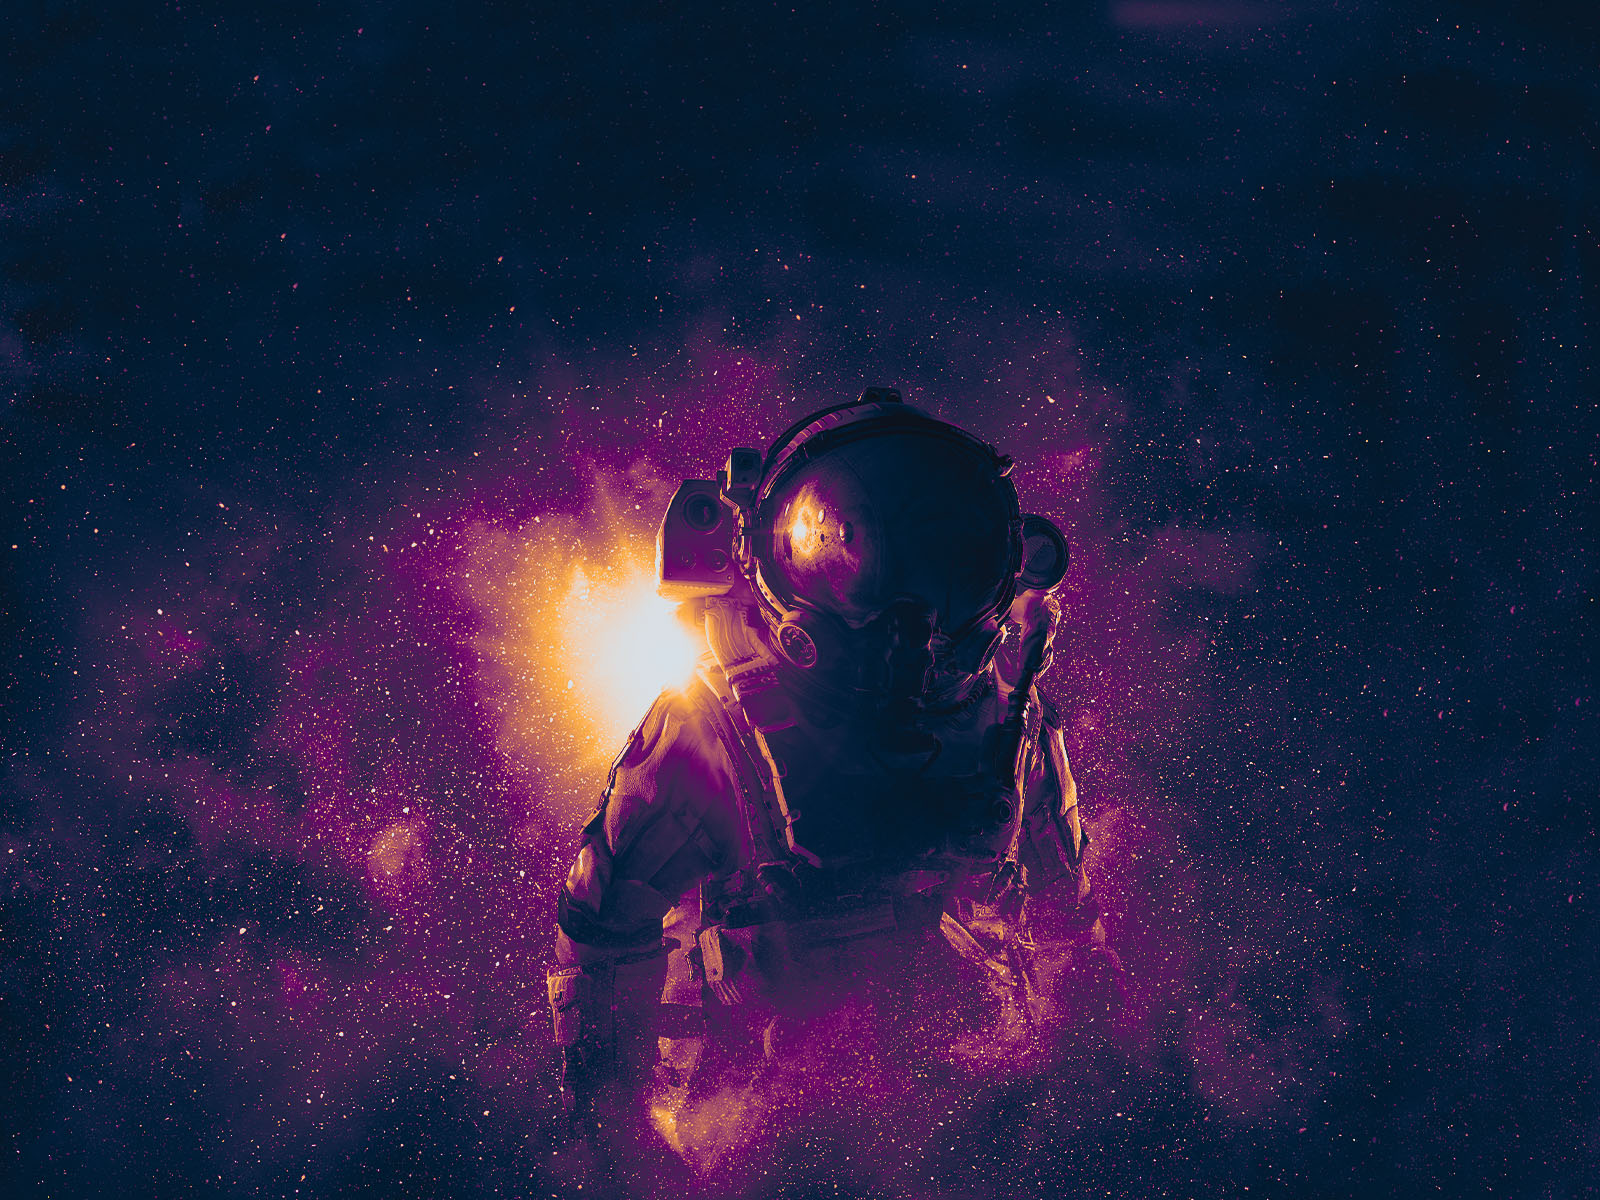 Release] [MP] Custom Sky (Purple Space)